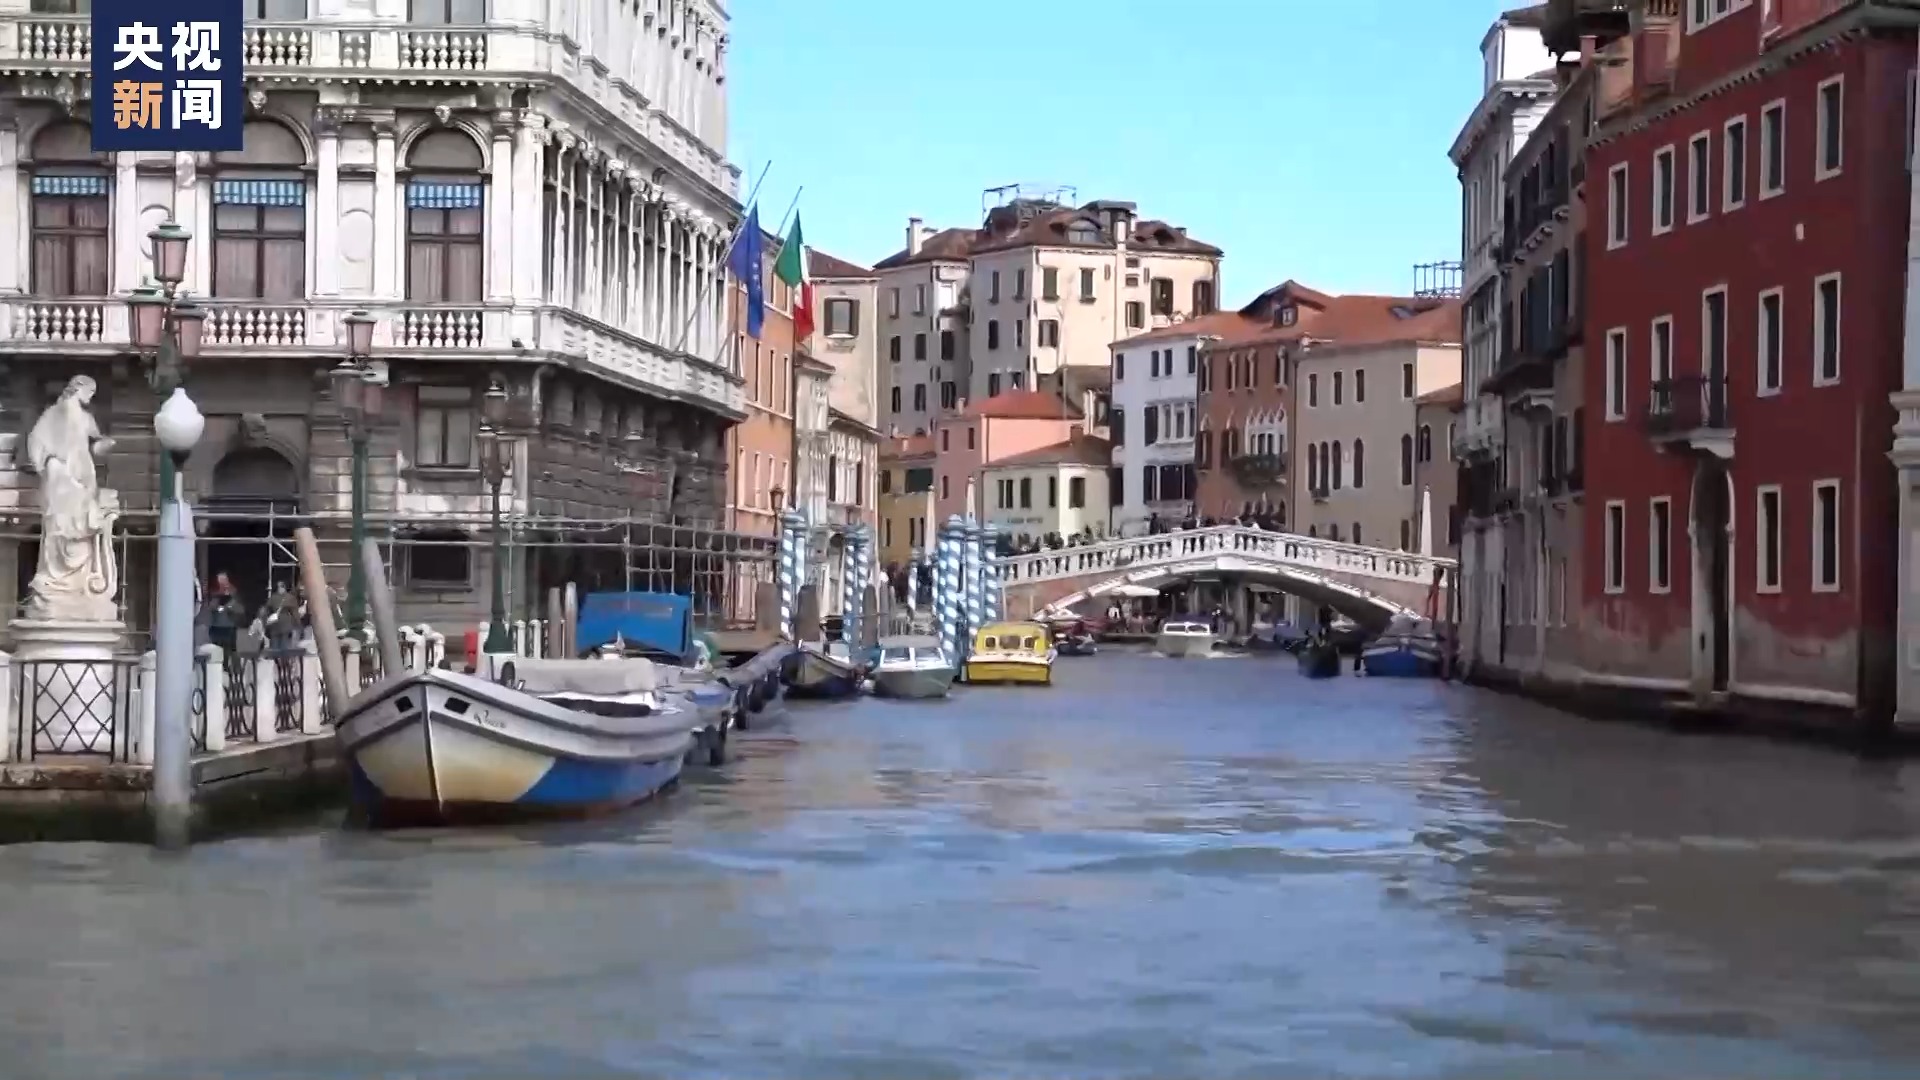 意大利威尼斯开收“进城费” 游客反应不一